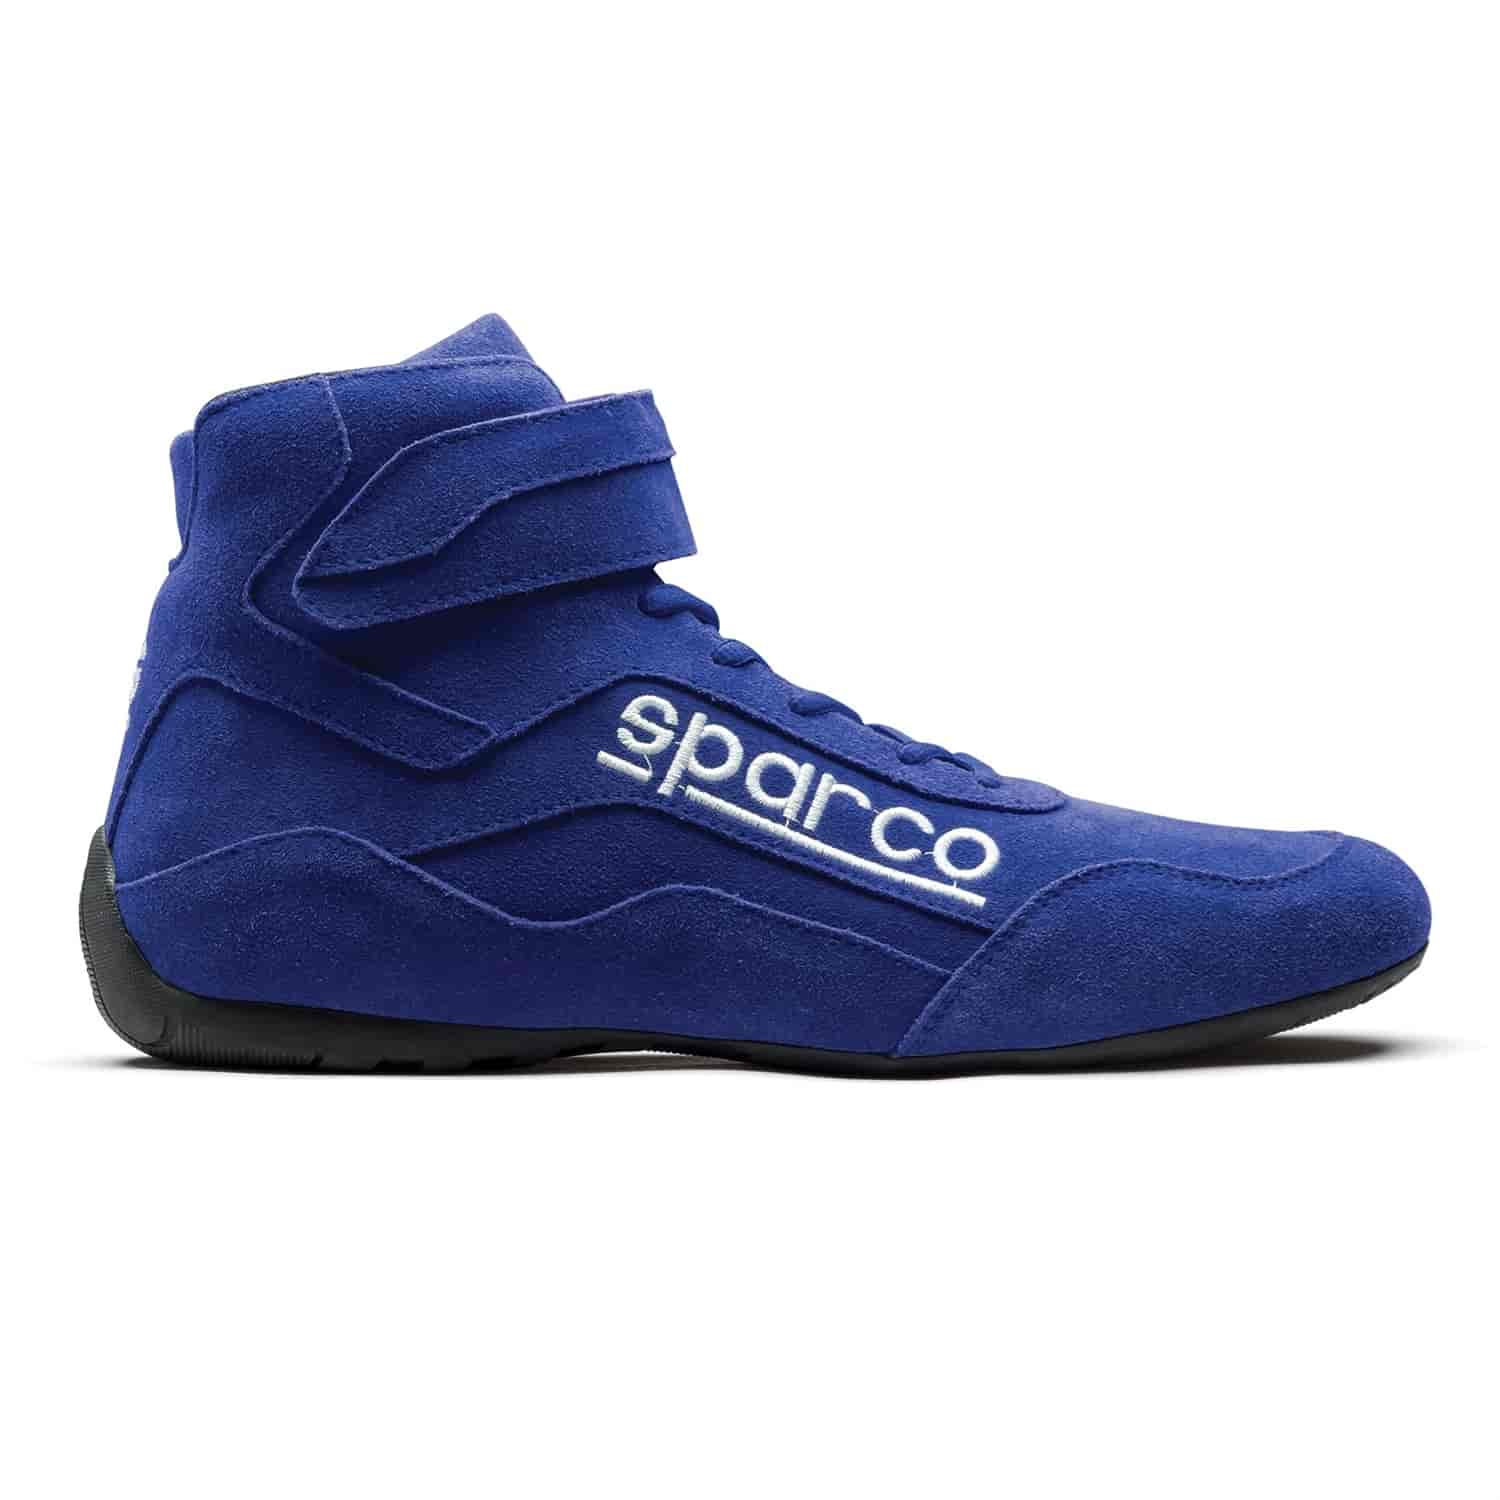 Race 2 Shoe Size 8.5 - Blue